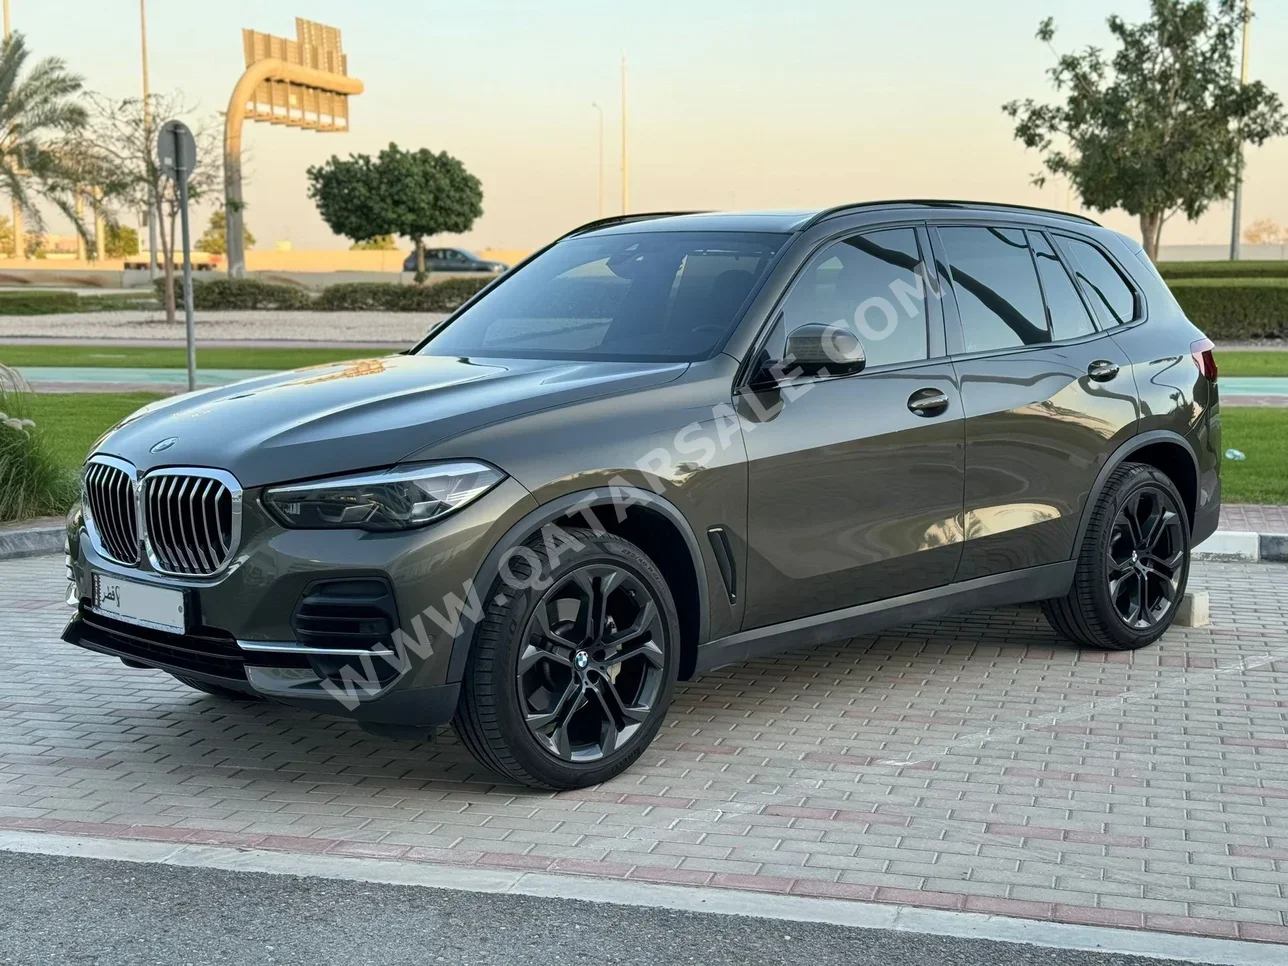 BMW  X-Series  X5  2023  Automatic  29,000 Km  6 Cylinder  Four Wheel Drive (4WD)  SUV  Gray  With Warranty